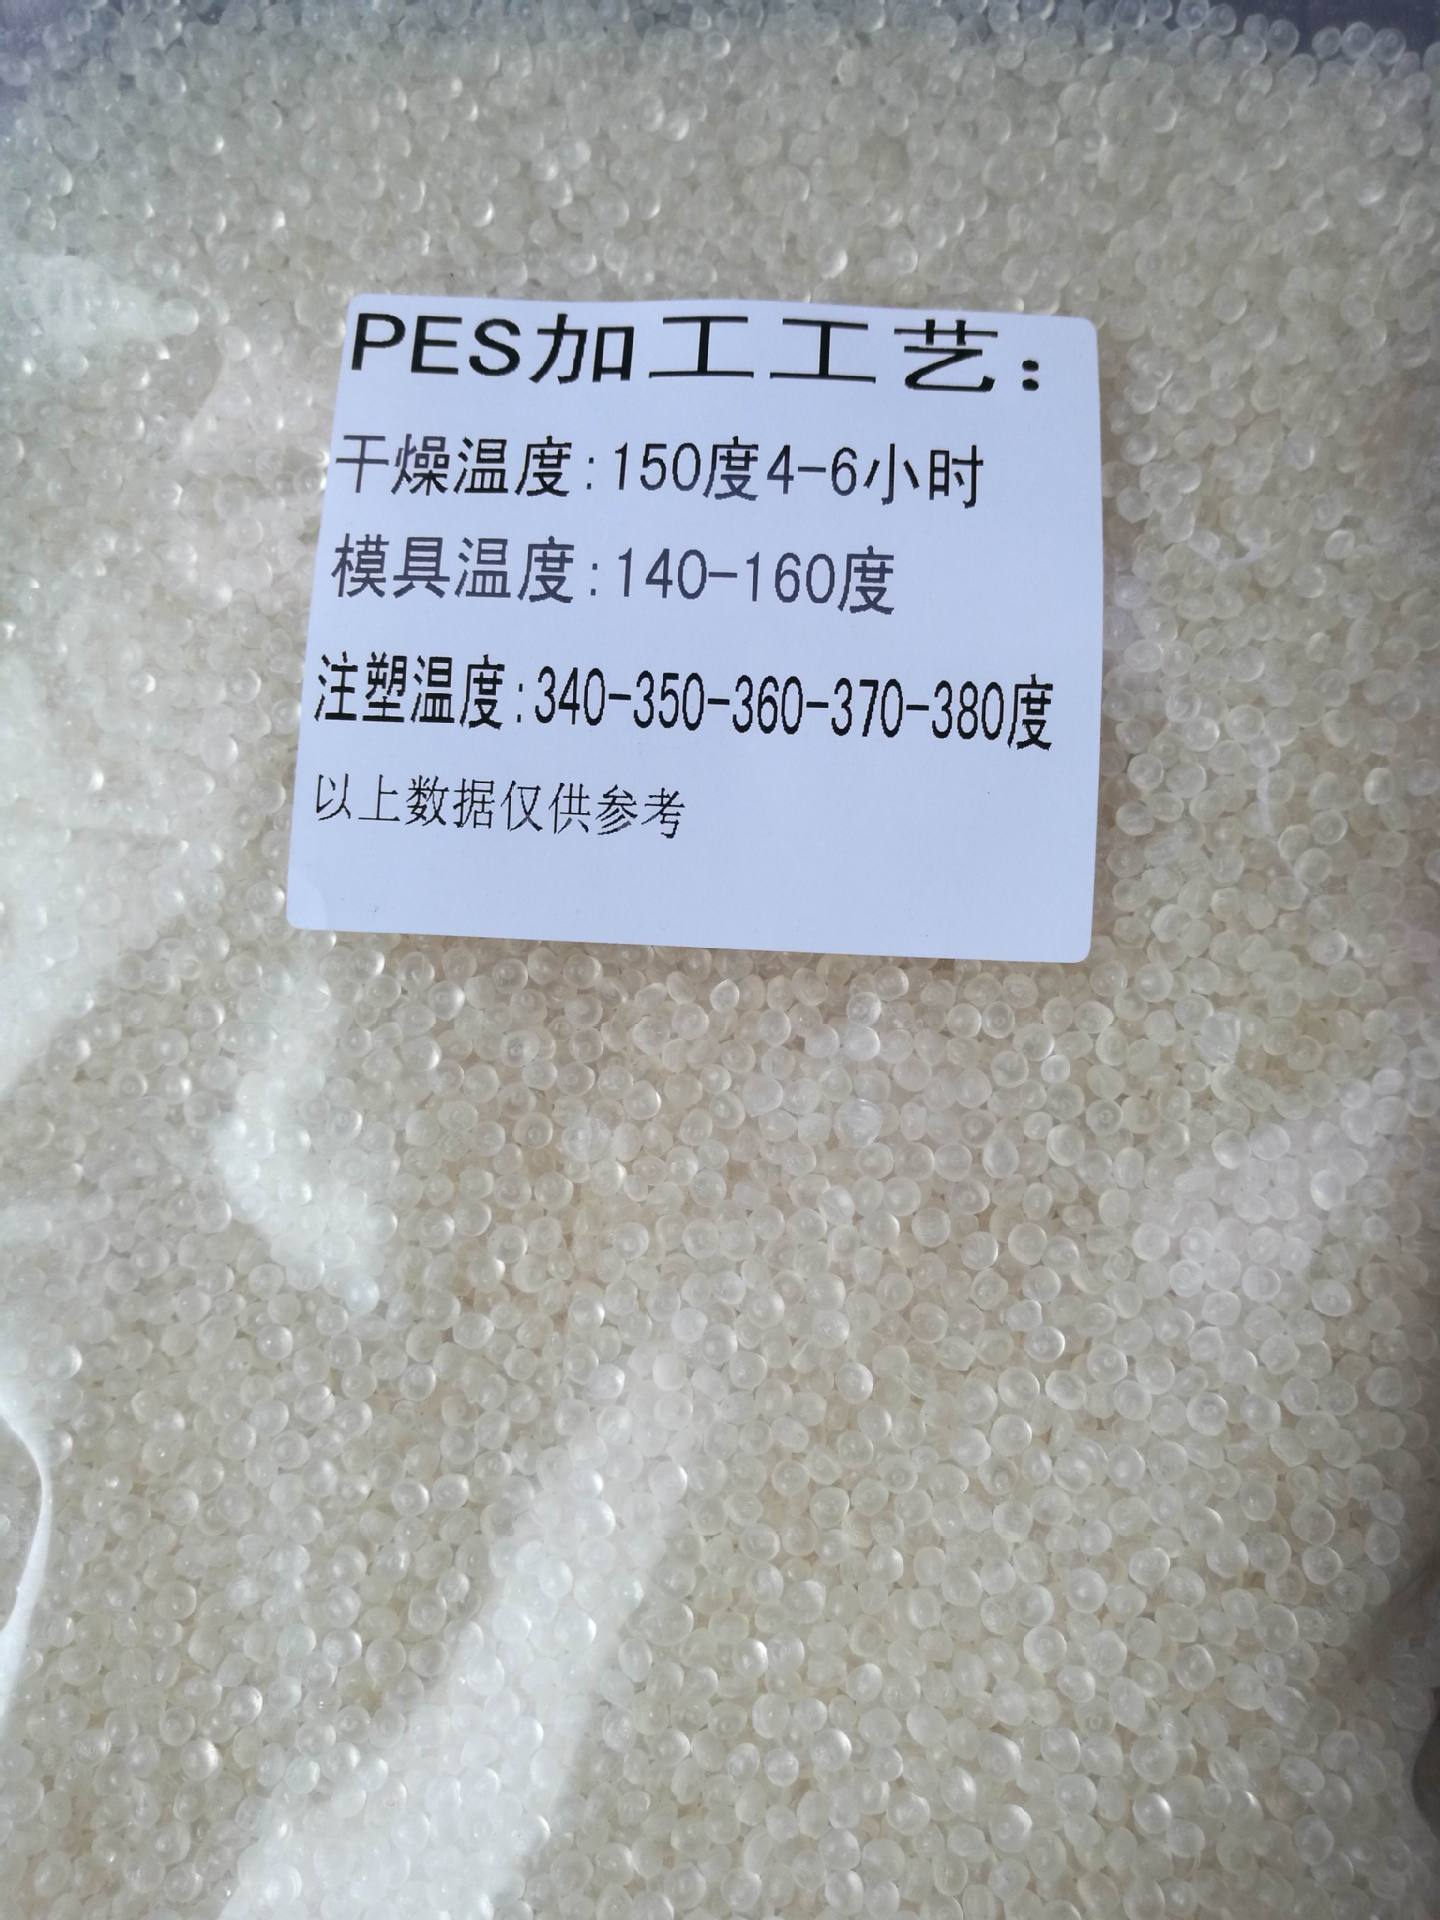 【热销】高耐热性 聚醚砜PES 德国巴斯夫 E2010工程塑料 高透明示例图10